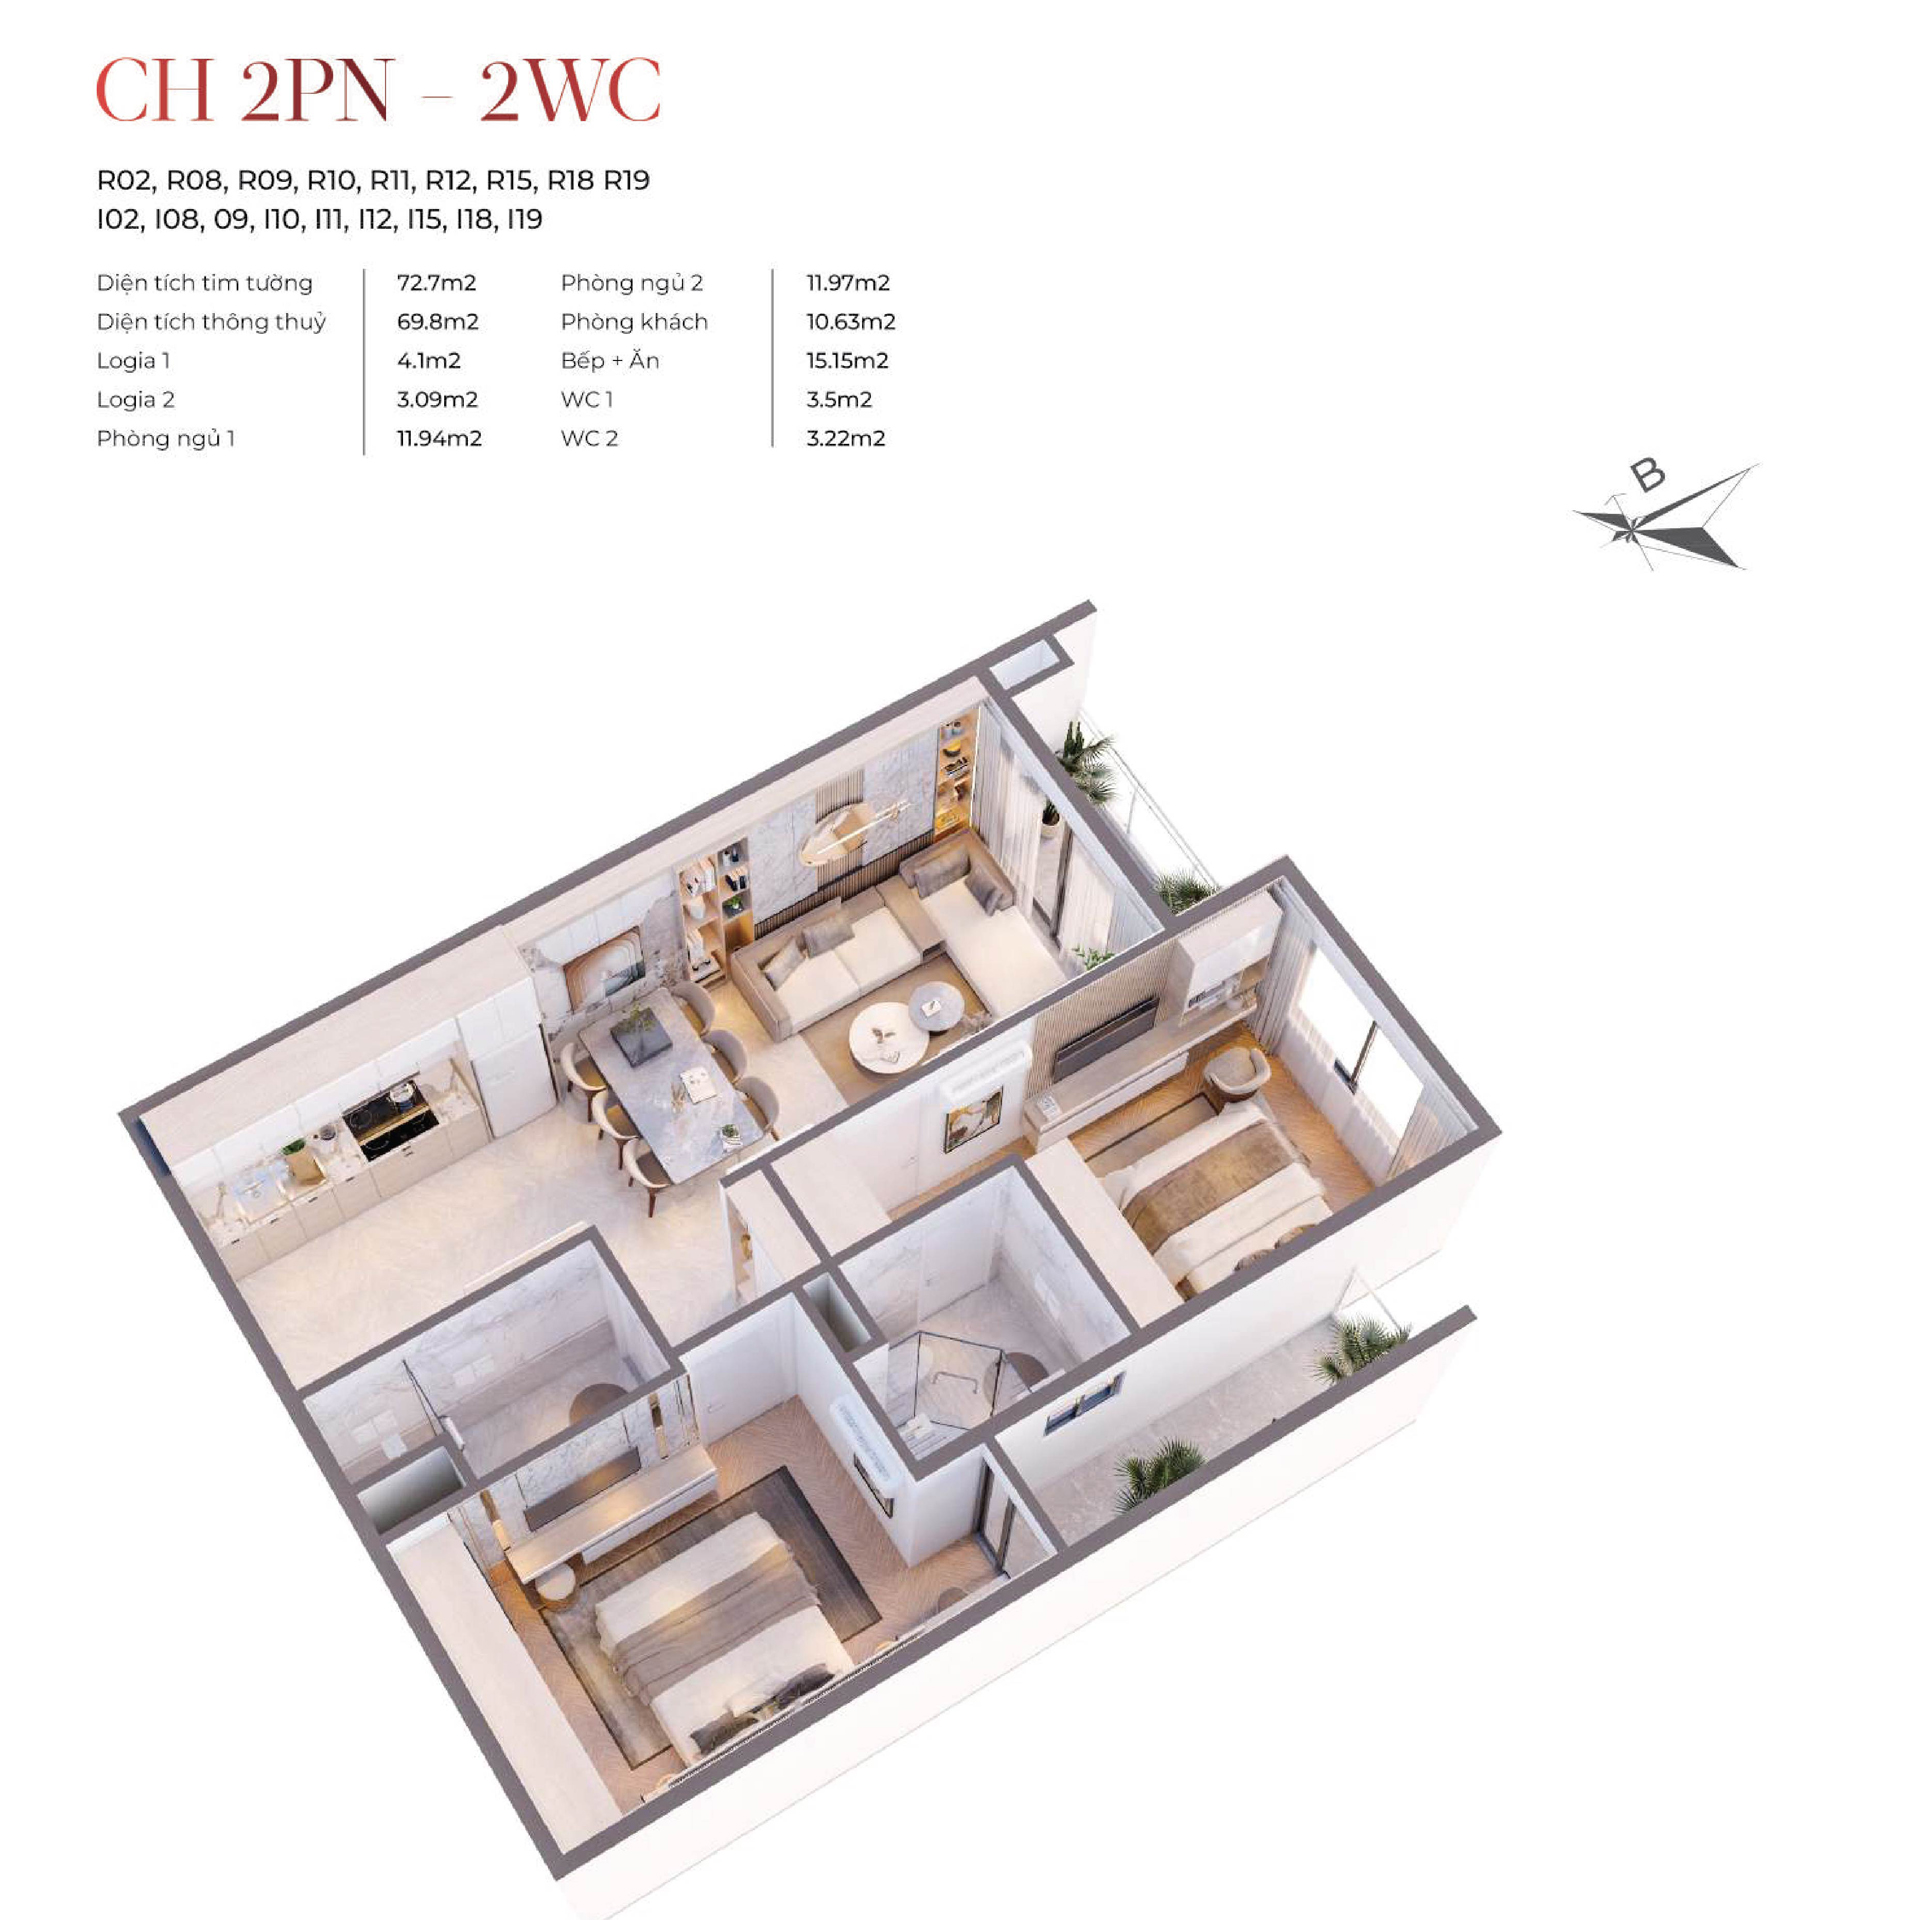 Bóc mái Thiết kế 3D căn hộ 2 phòng ngủ 2 vệ sinh 68,8m2 VIC Grand Square